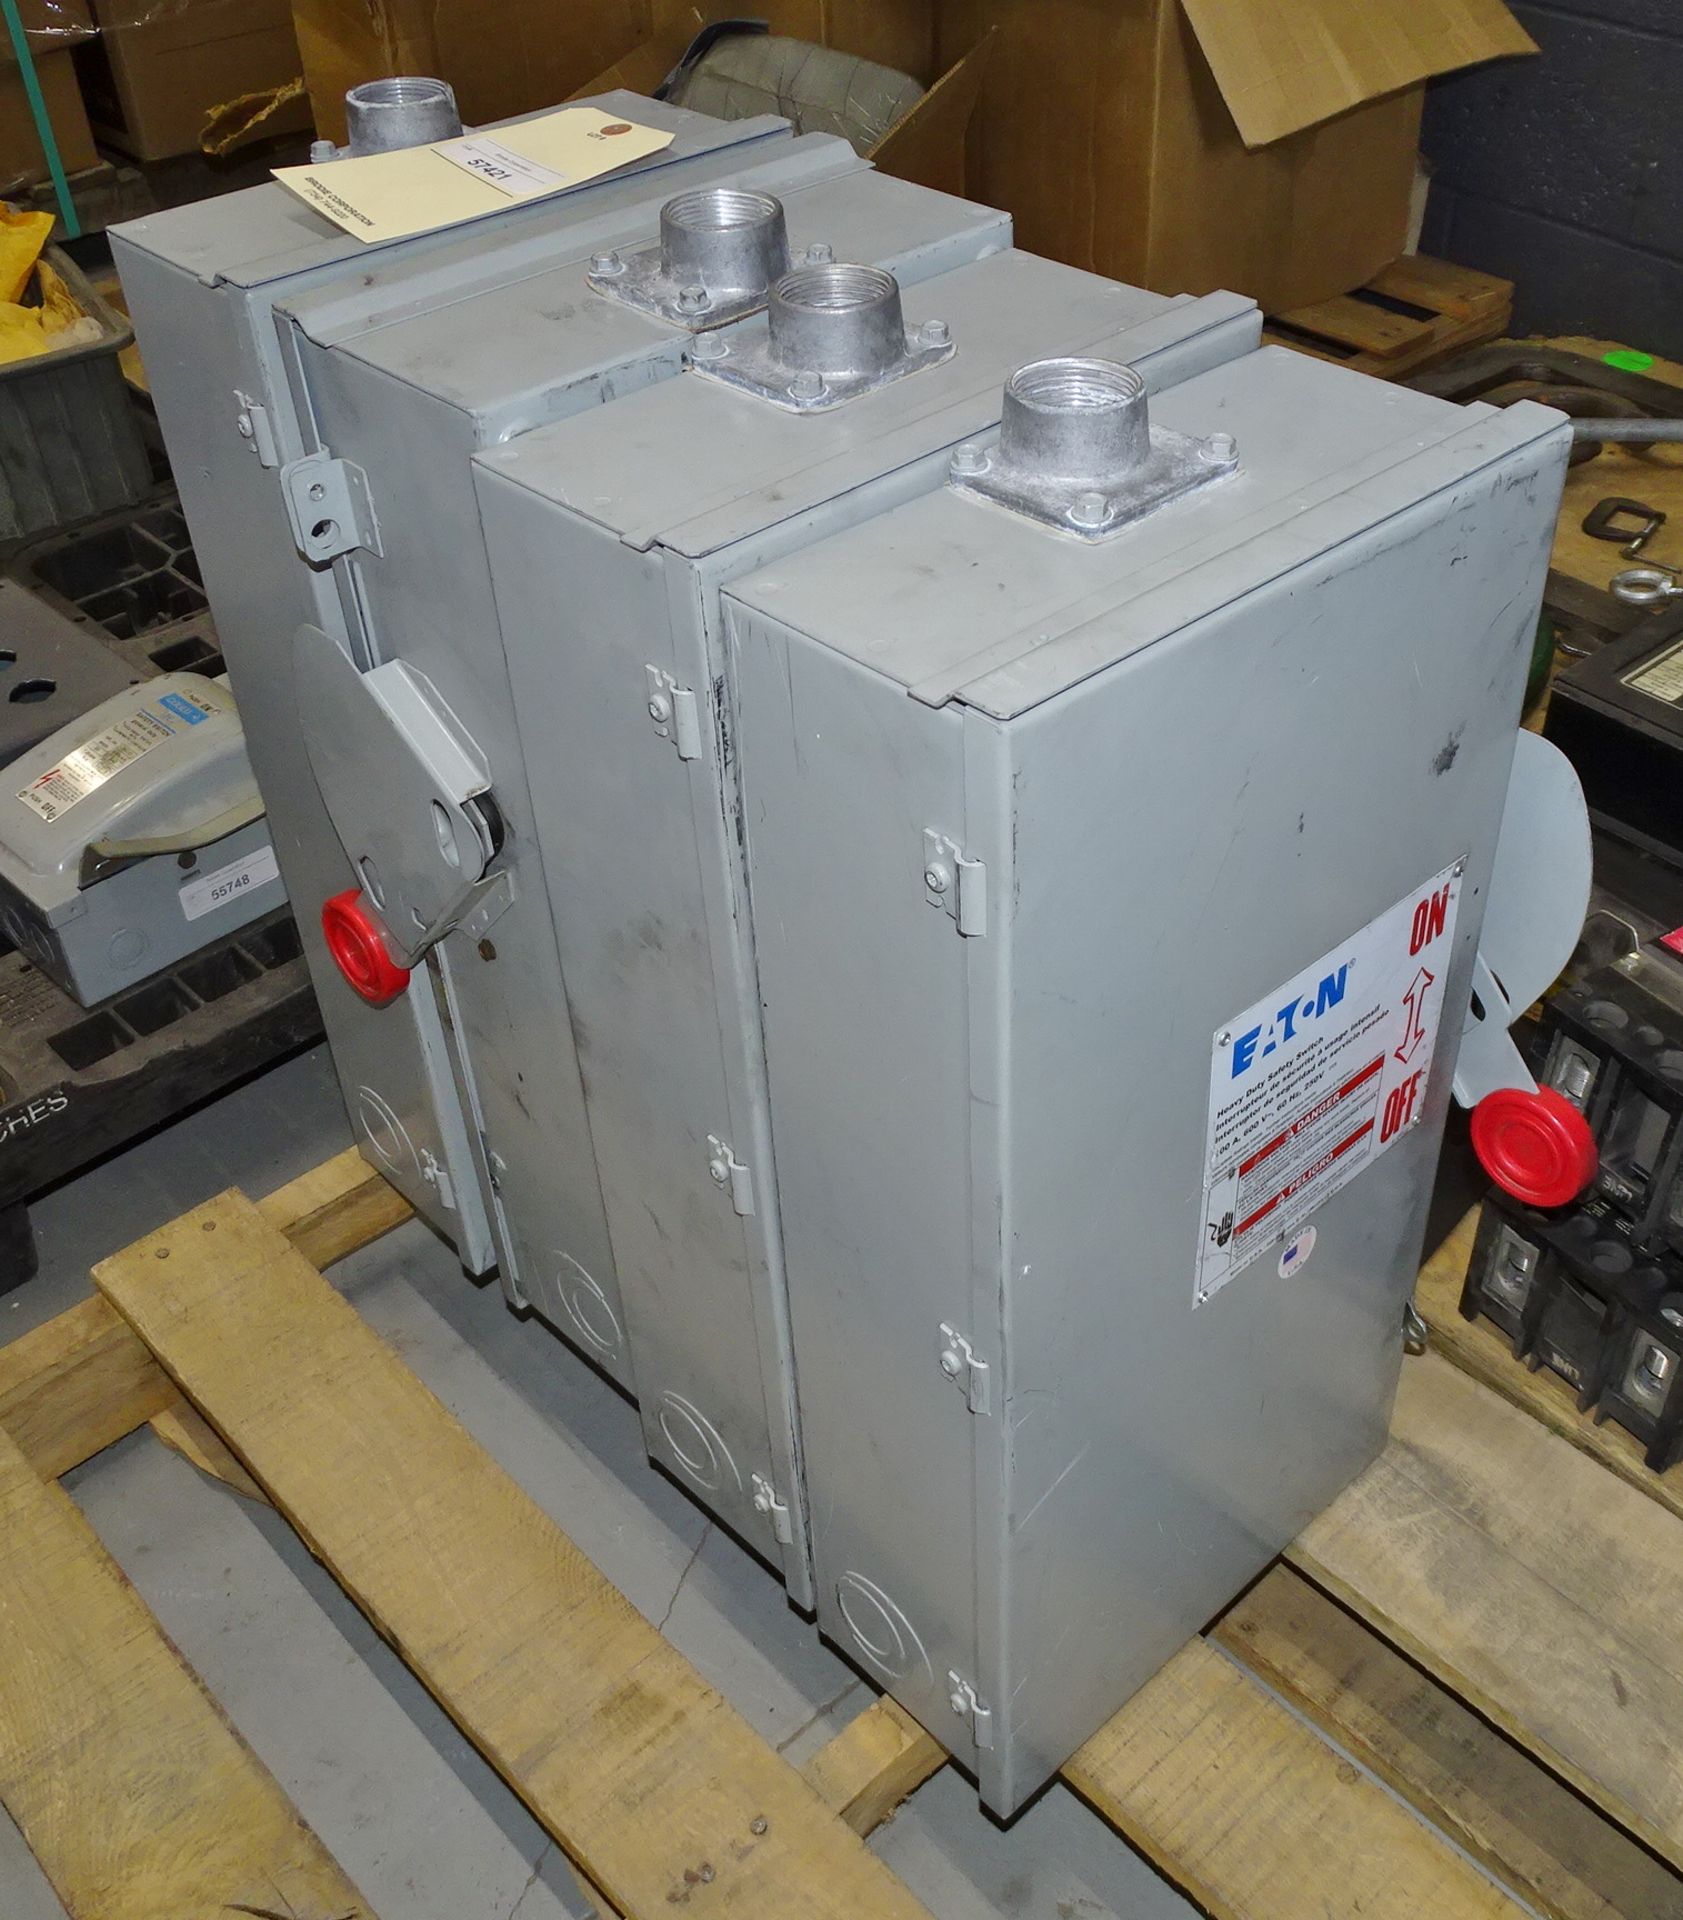 4 Eaton 100 amp 600 Volt Electric Breaker Boxes